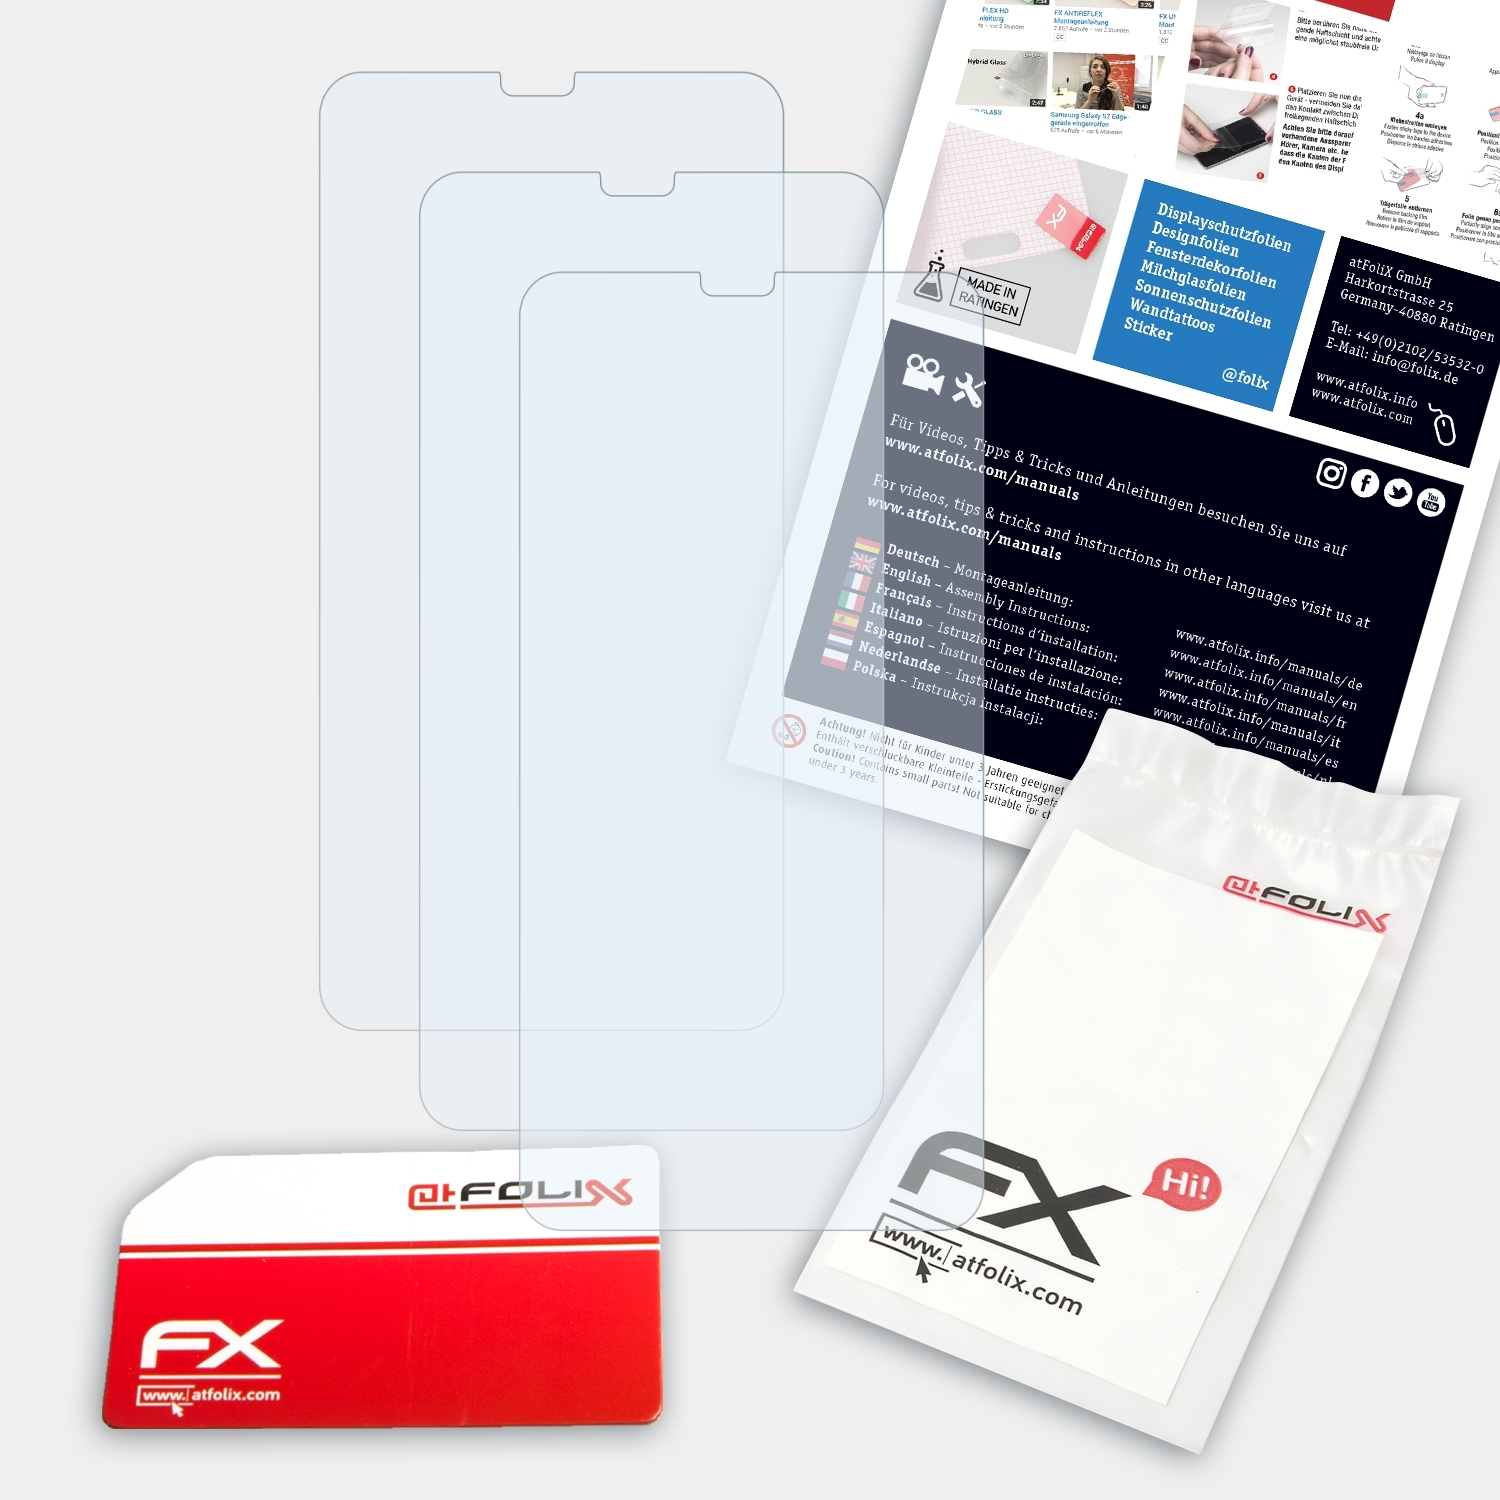 ATFOLIX 3x FX-Clear Pro) Oppo R15 Displayschutz(für